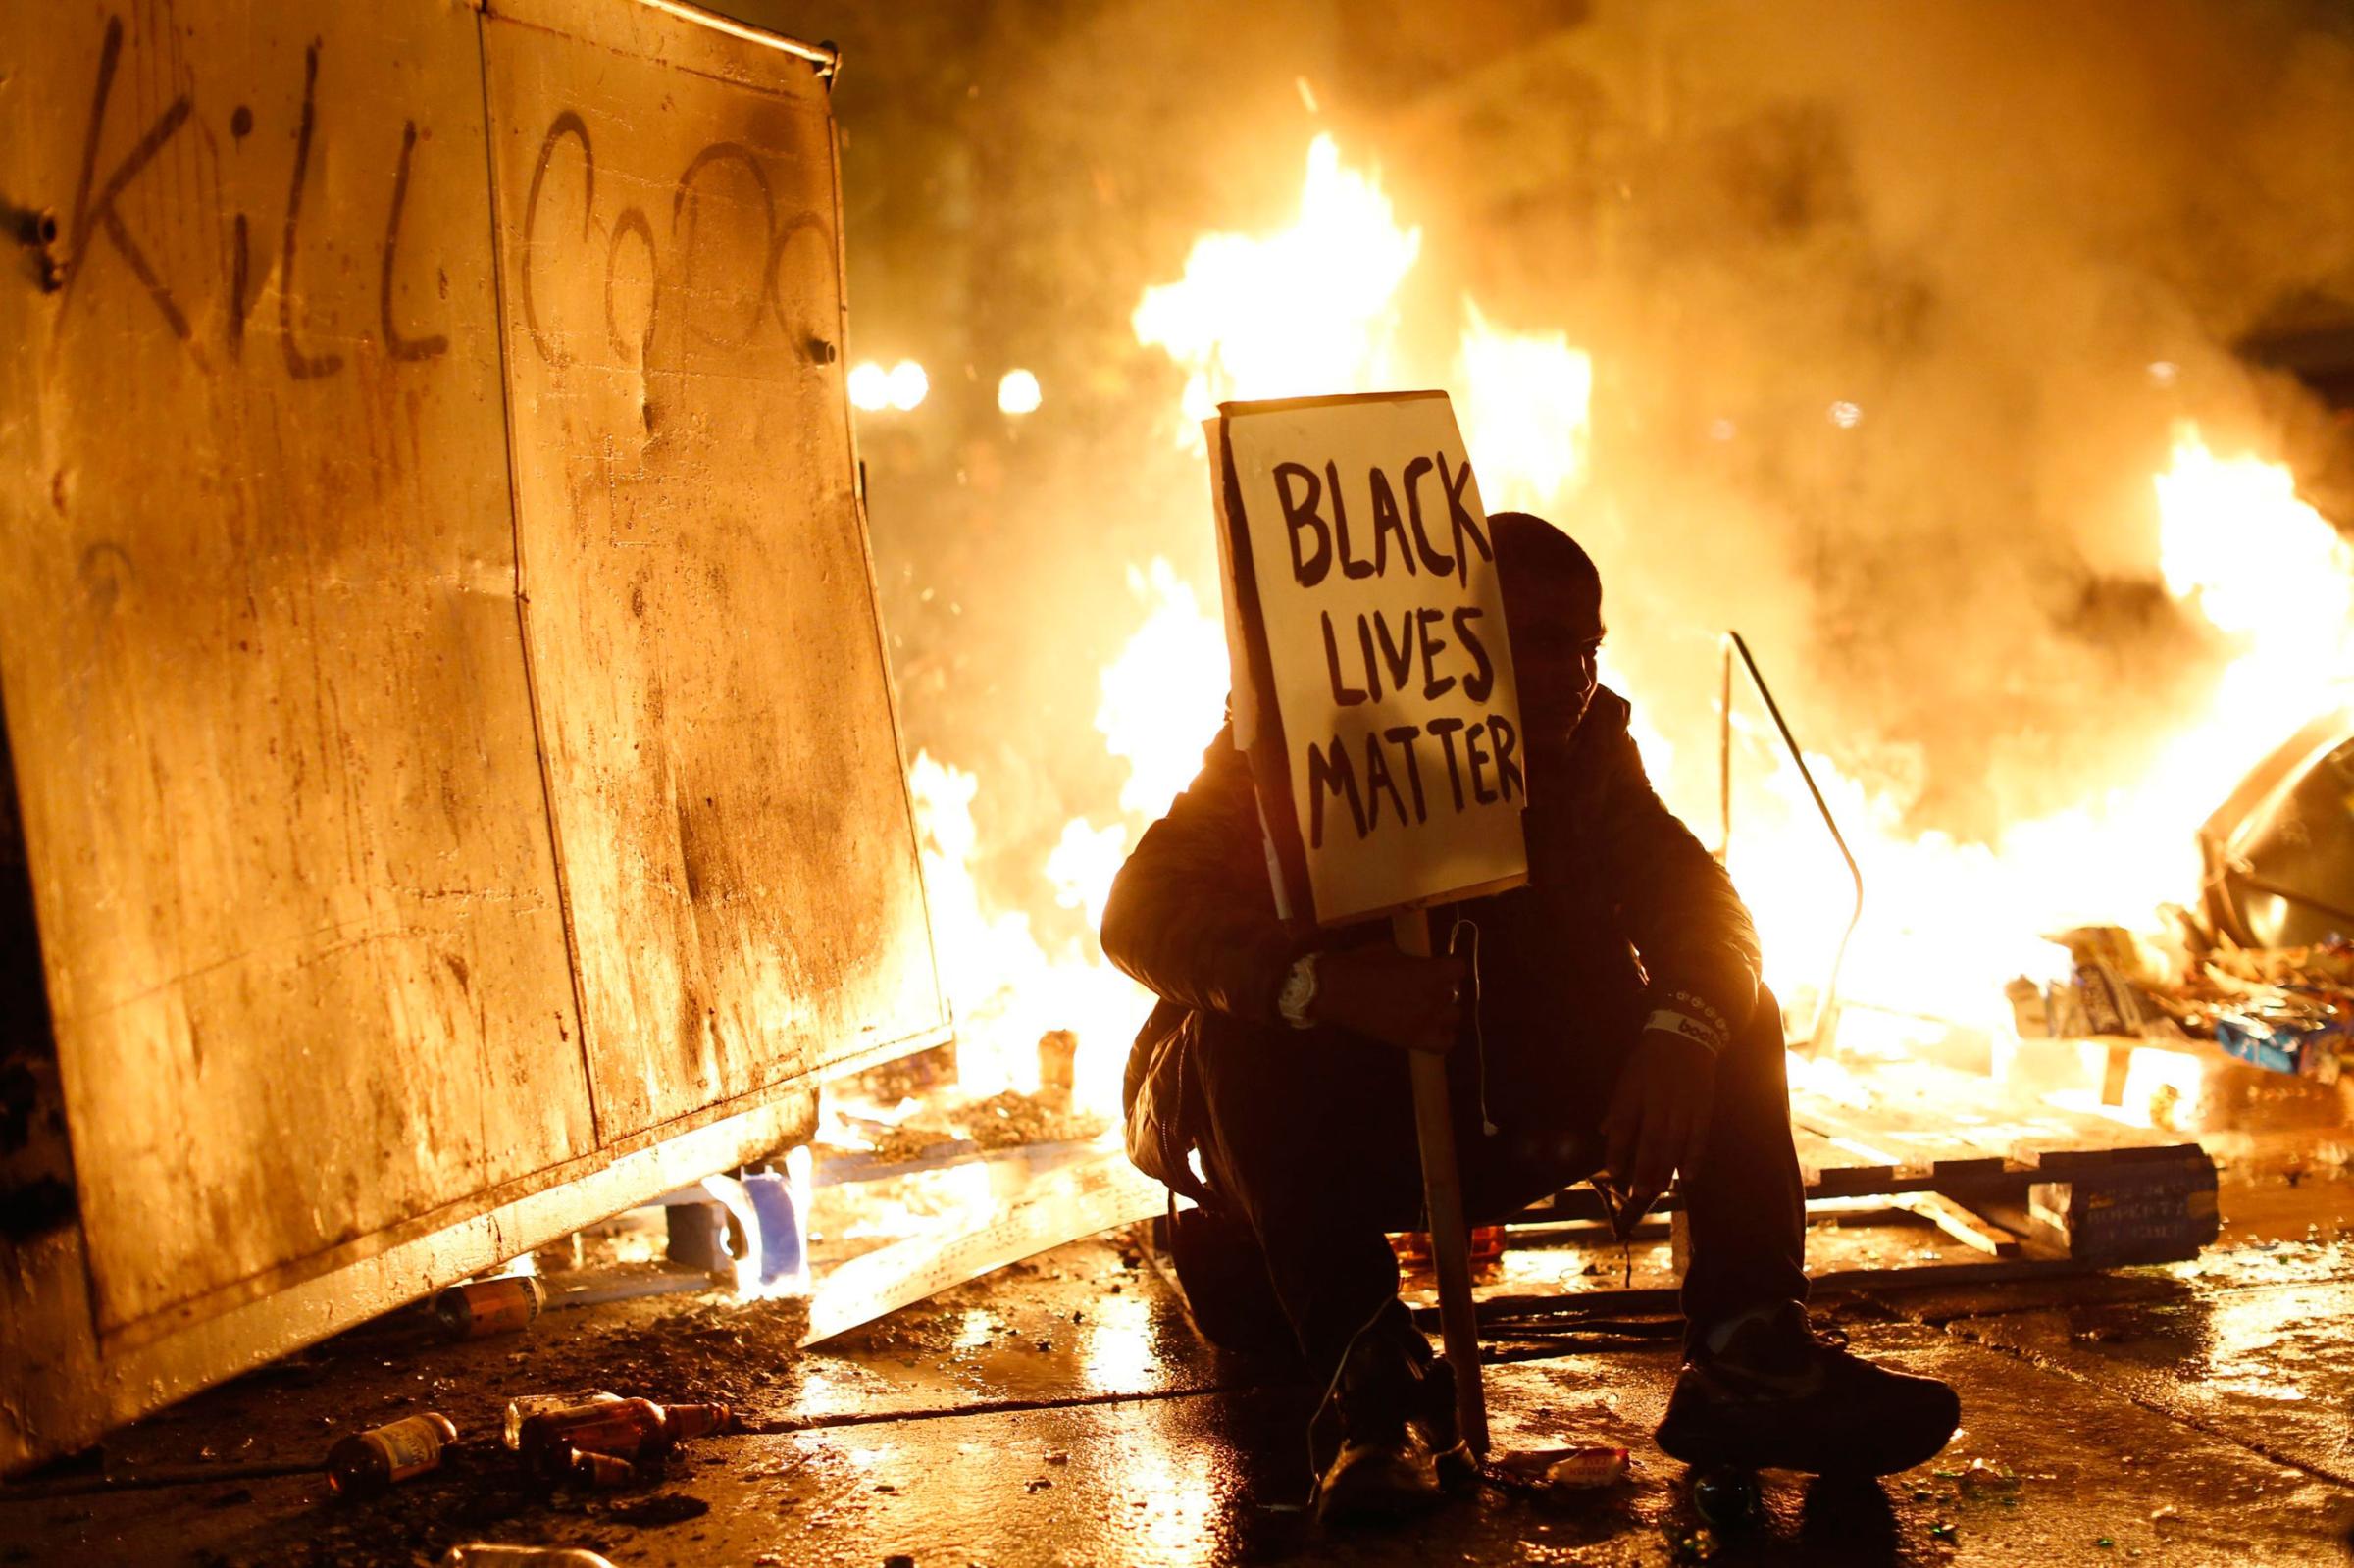 Flames burn behind a demonstrator in Oakland, Calif., on Nov. 25, 2014.